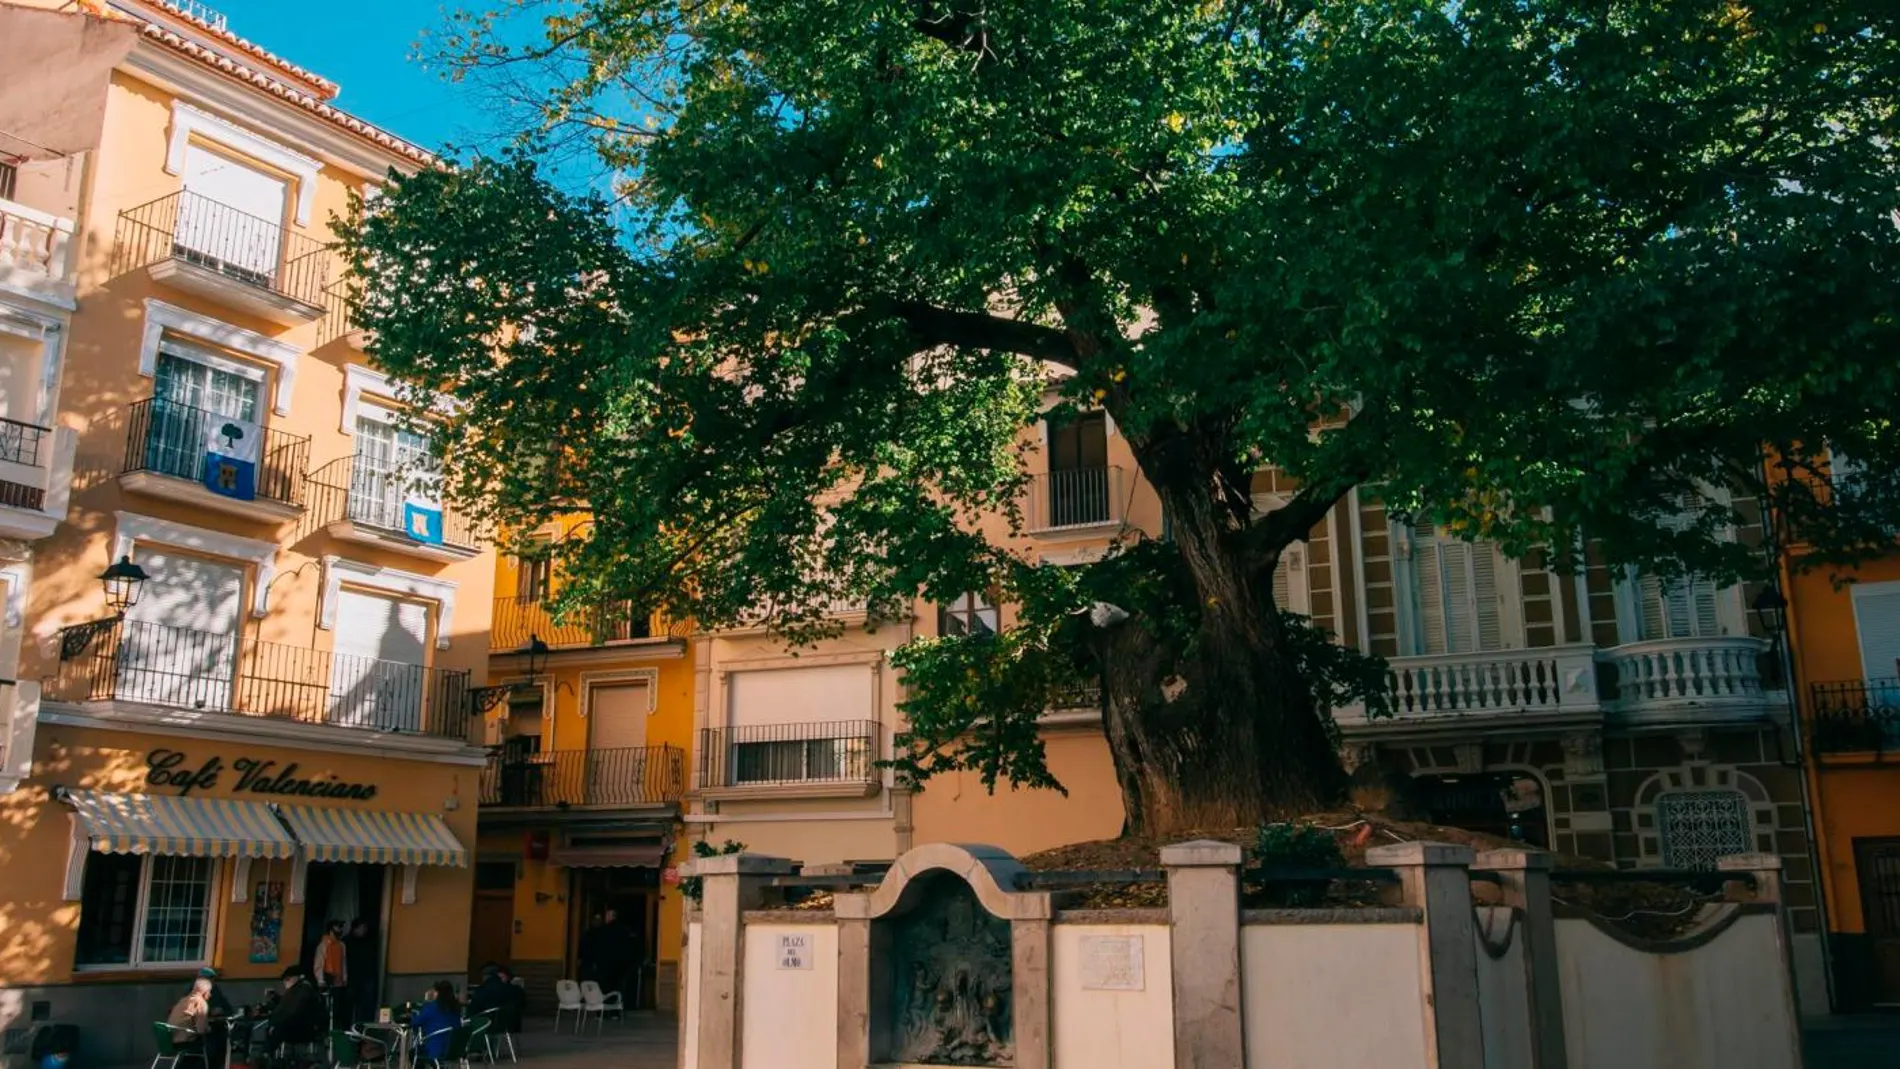 El centenario olmo de Navajas, ubicado en la plaza que lleva su nombre, es todo un símbolo en la comarca del Alto Palancia